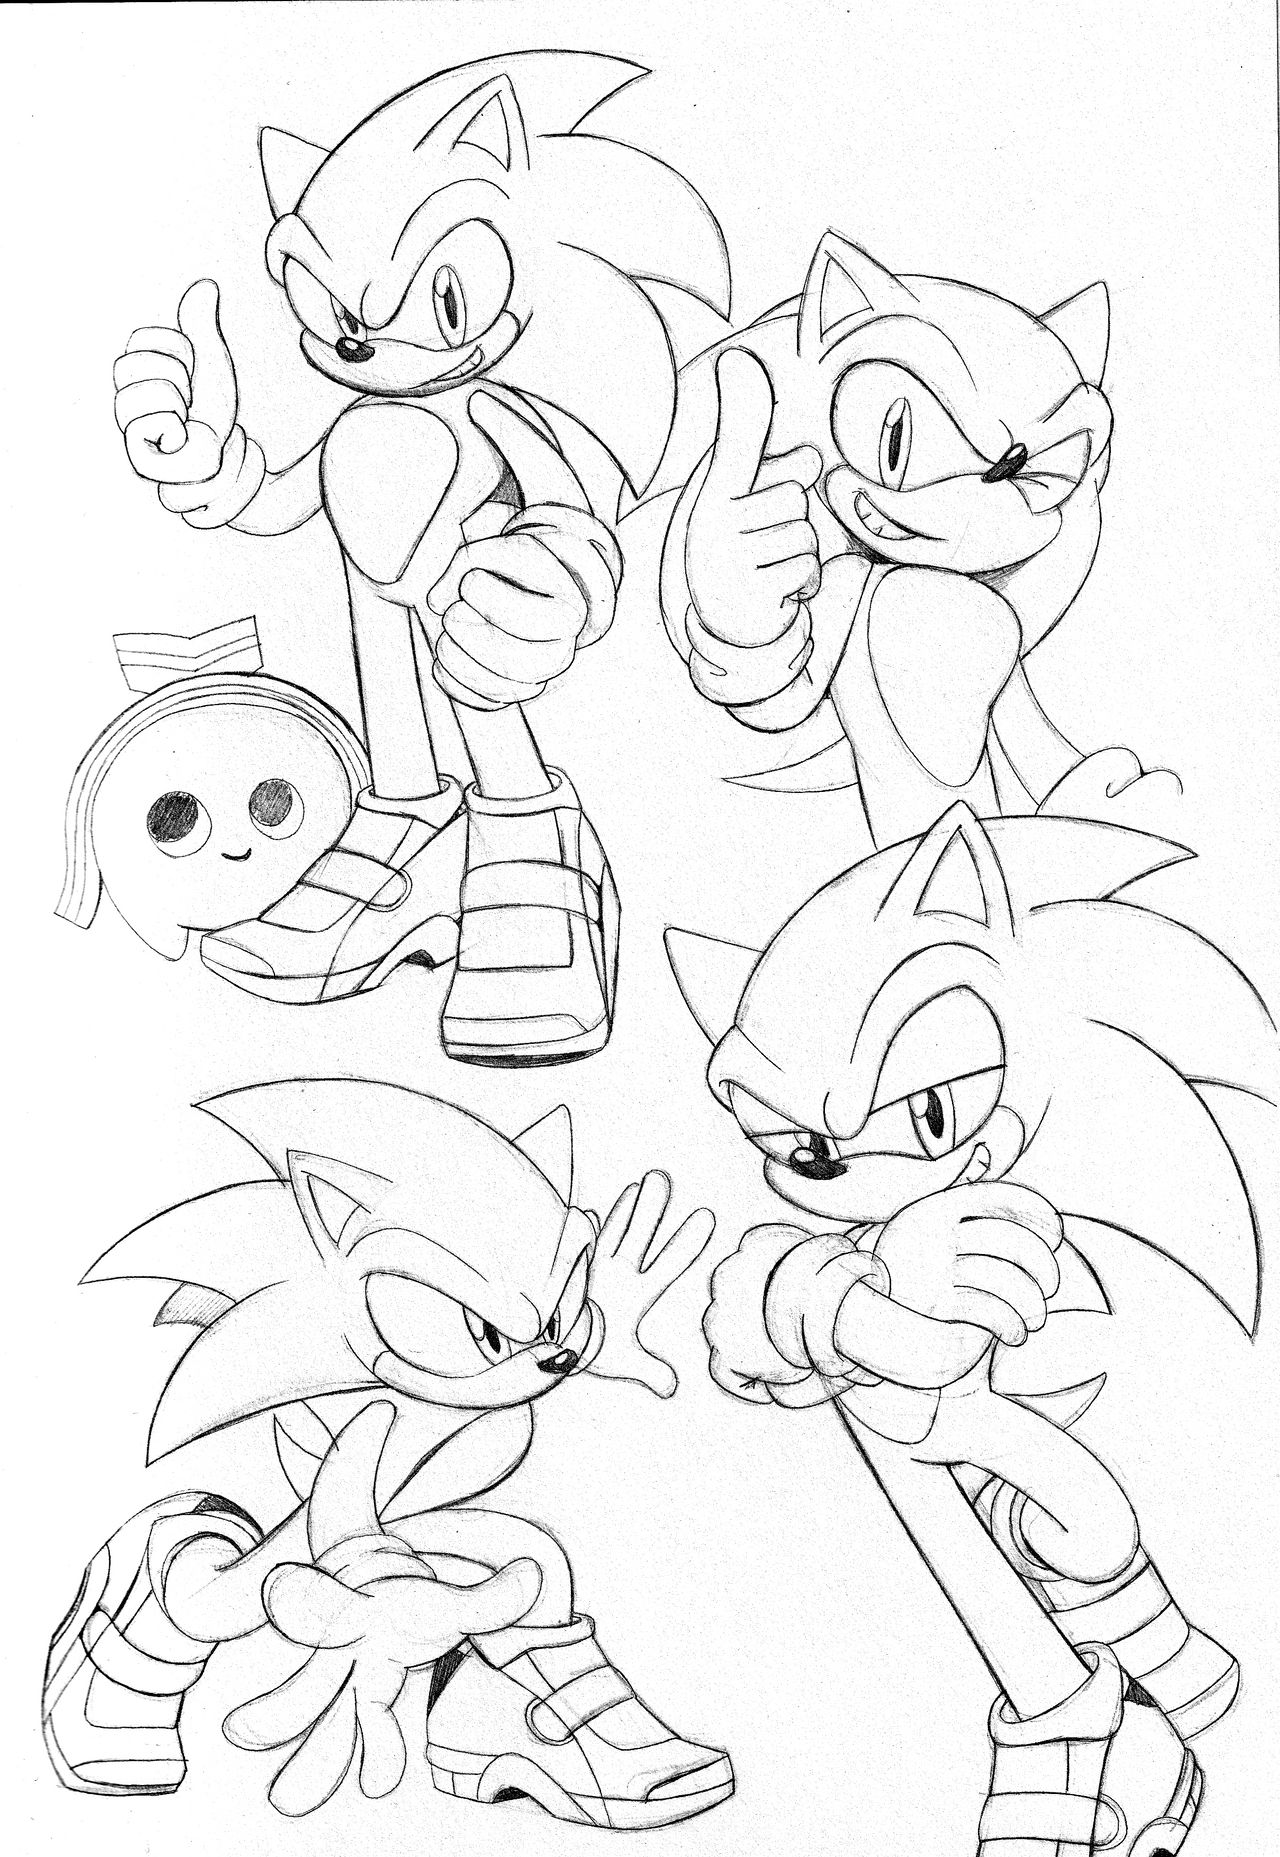 Sonic_doodles by OmegaSunBurst on DeviantArt